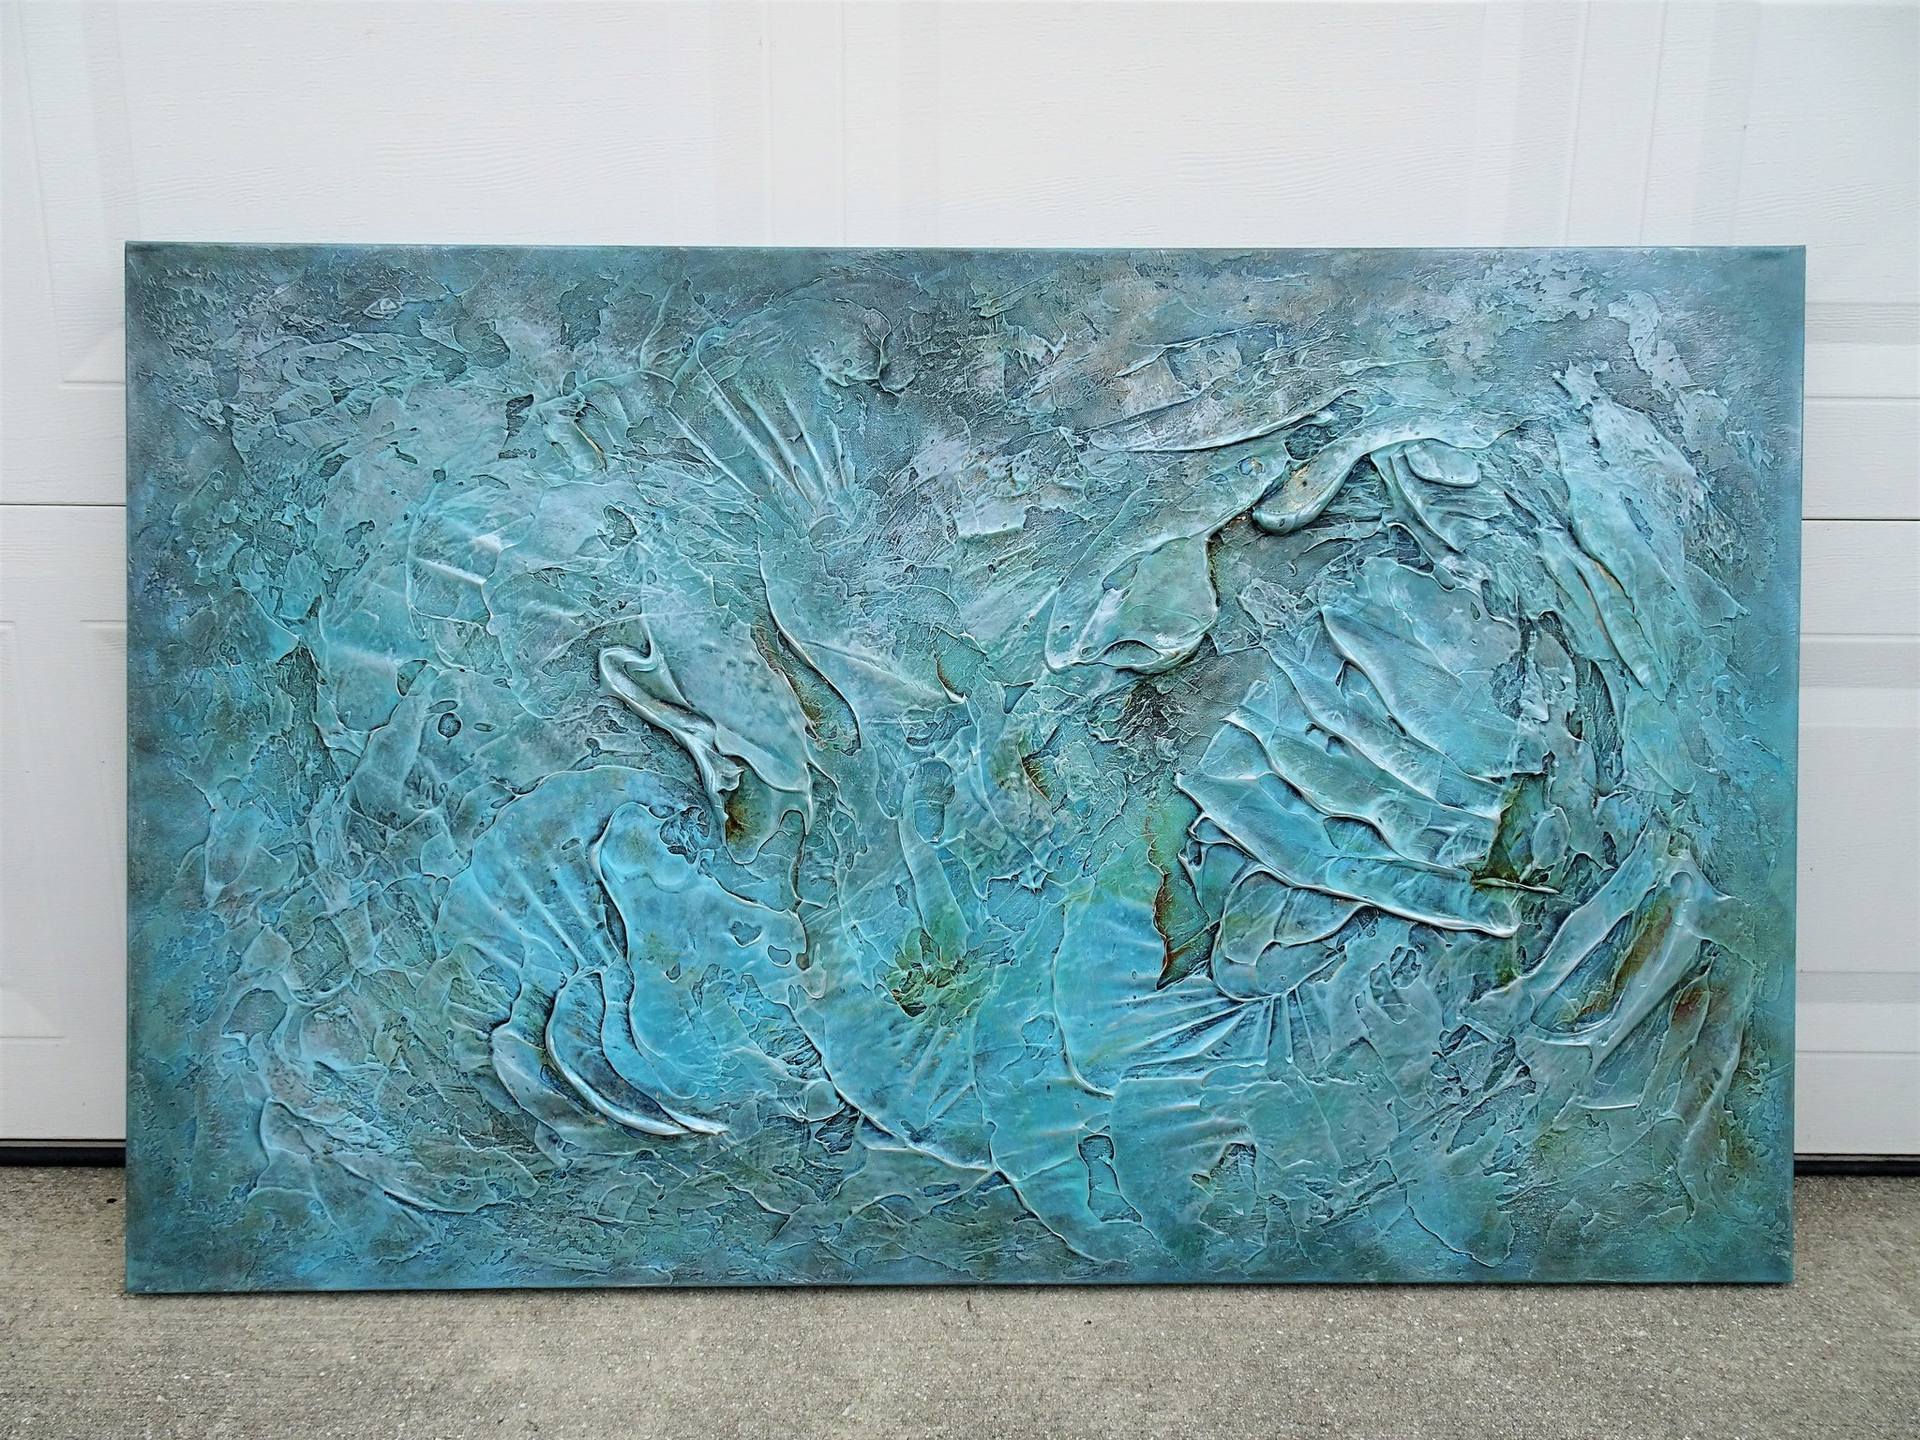 Textured Art, Art With Texture, With Textured Paint, Blue and Green Art, Aqua  Art, Aqua, Pictures, Abstract Art, From Australia, 90cmx60cm 